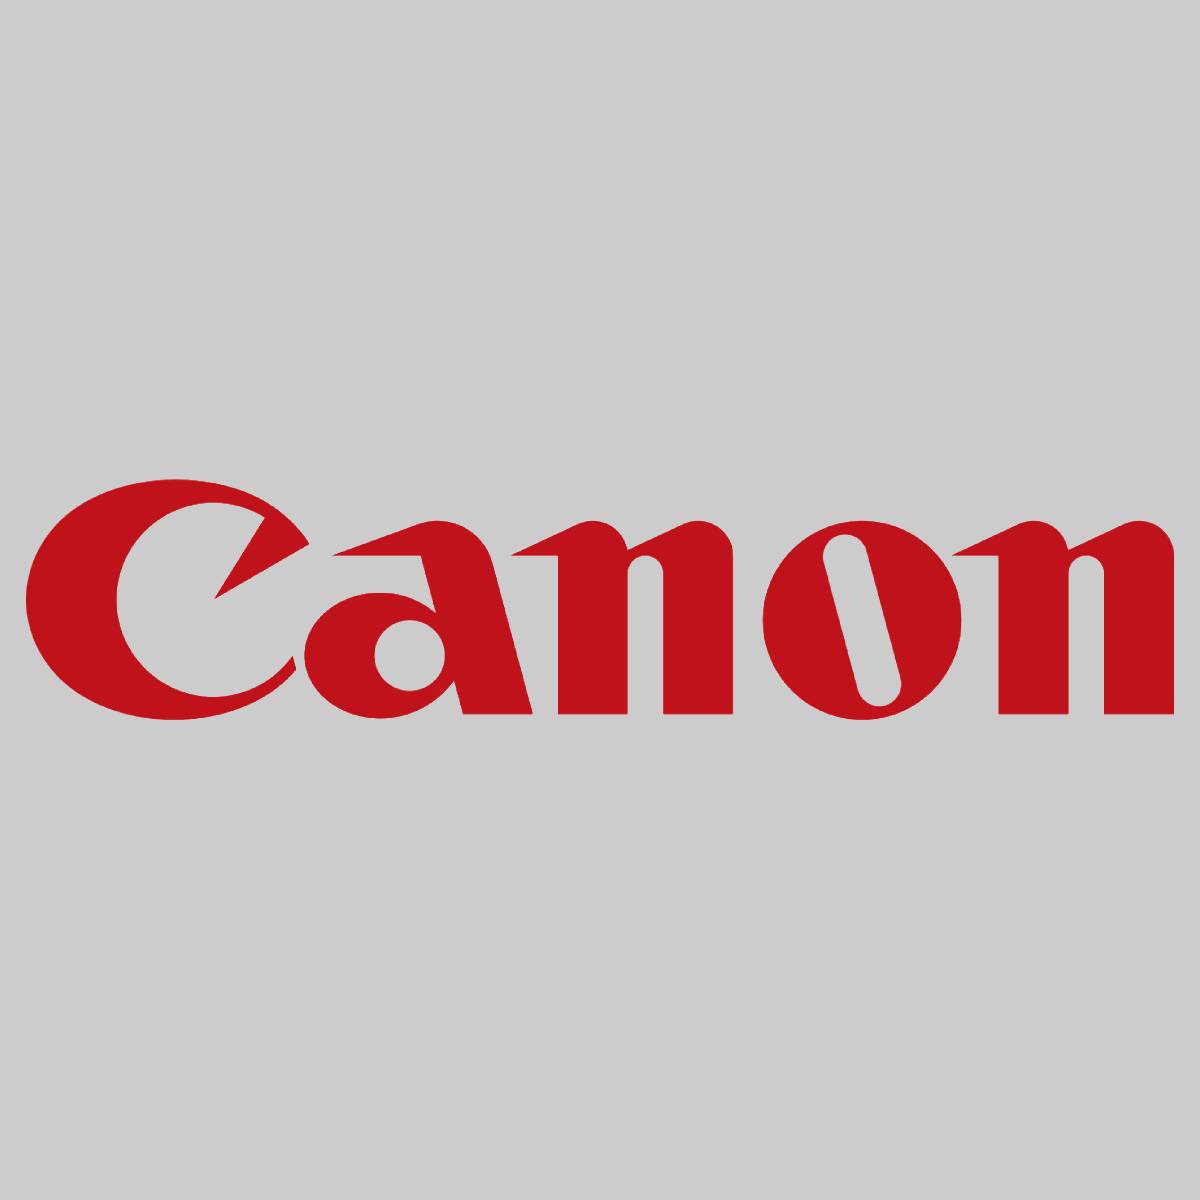 "Originele Canon FUSER OIL 1000ML FG5-3918-00L voor CLC 700 800 900 950 1000 1130